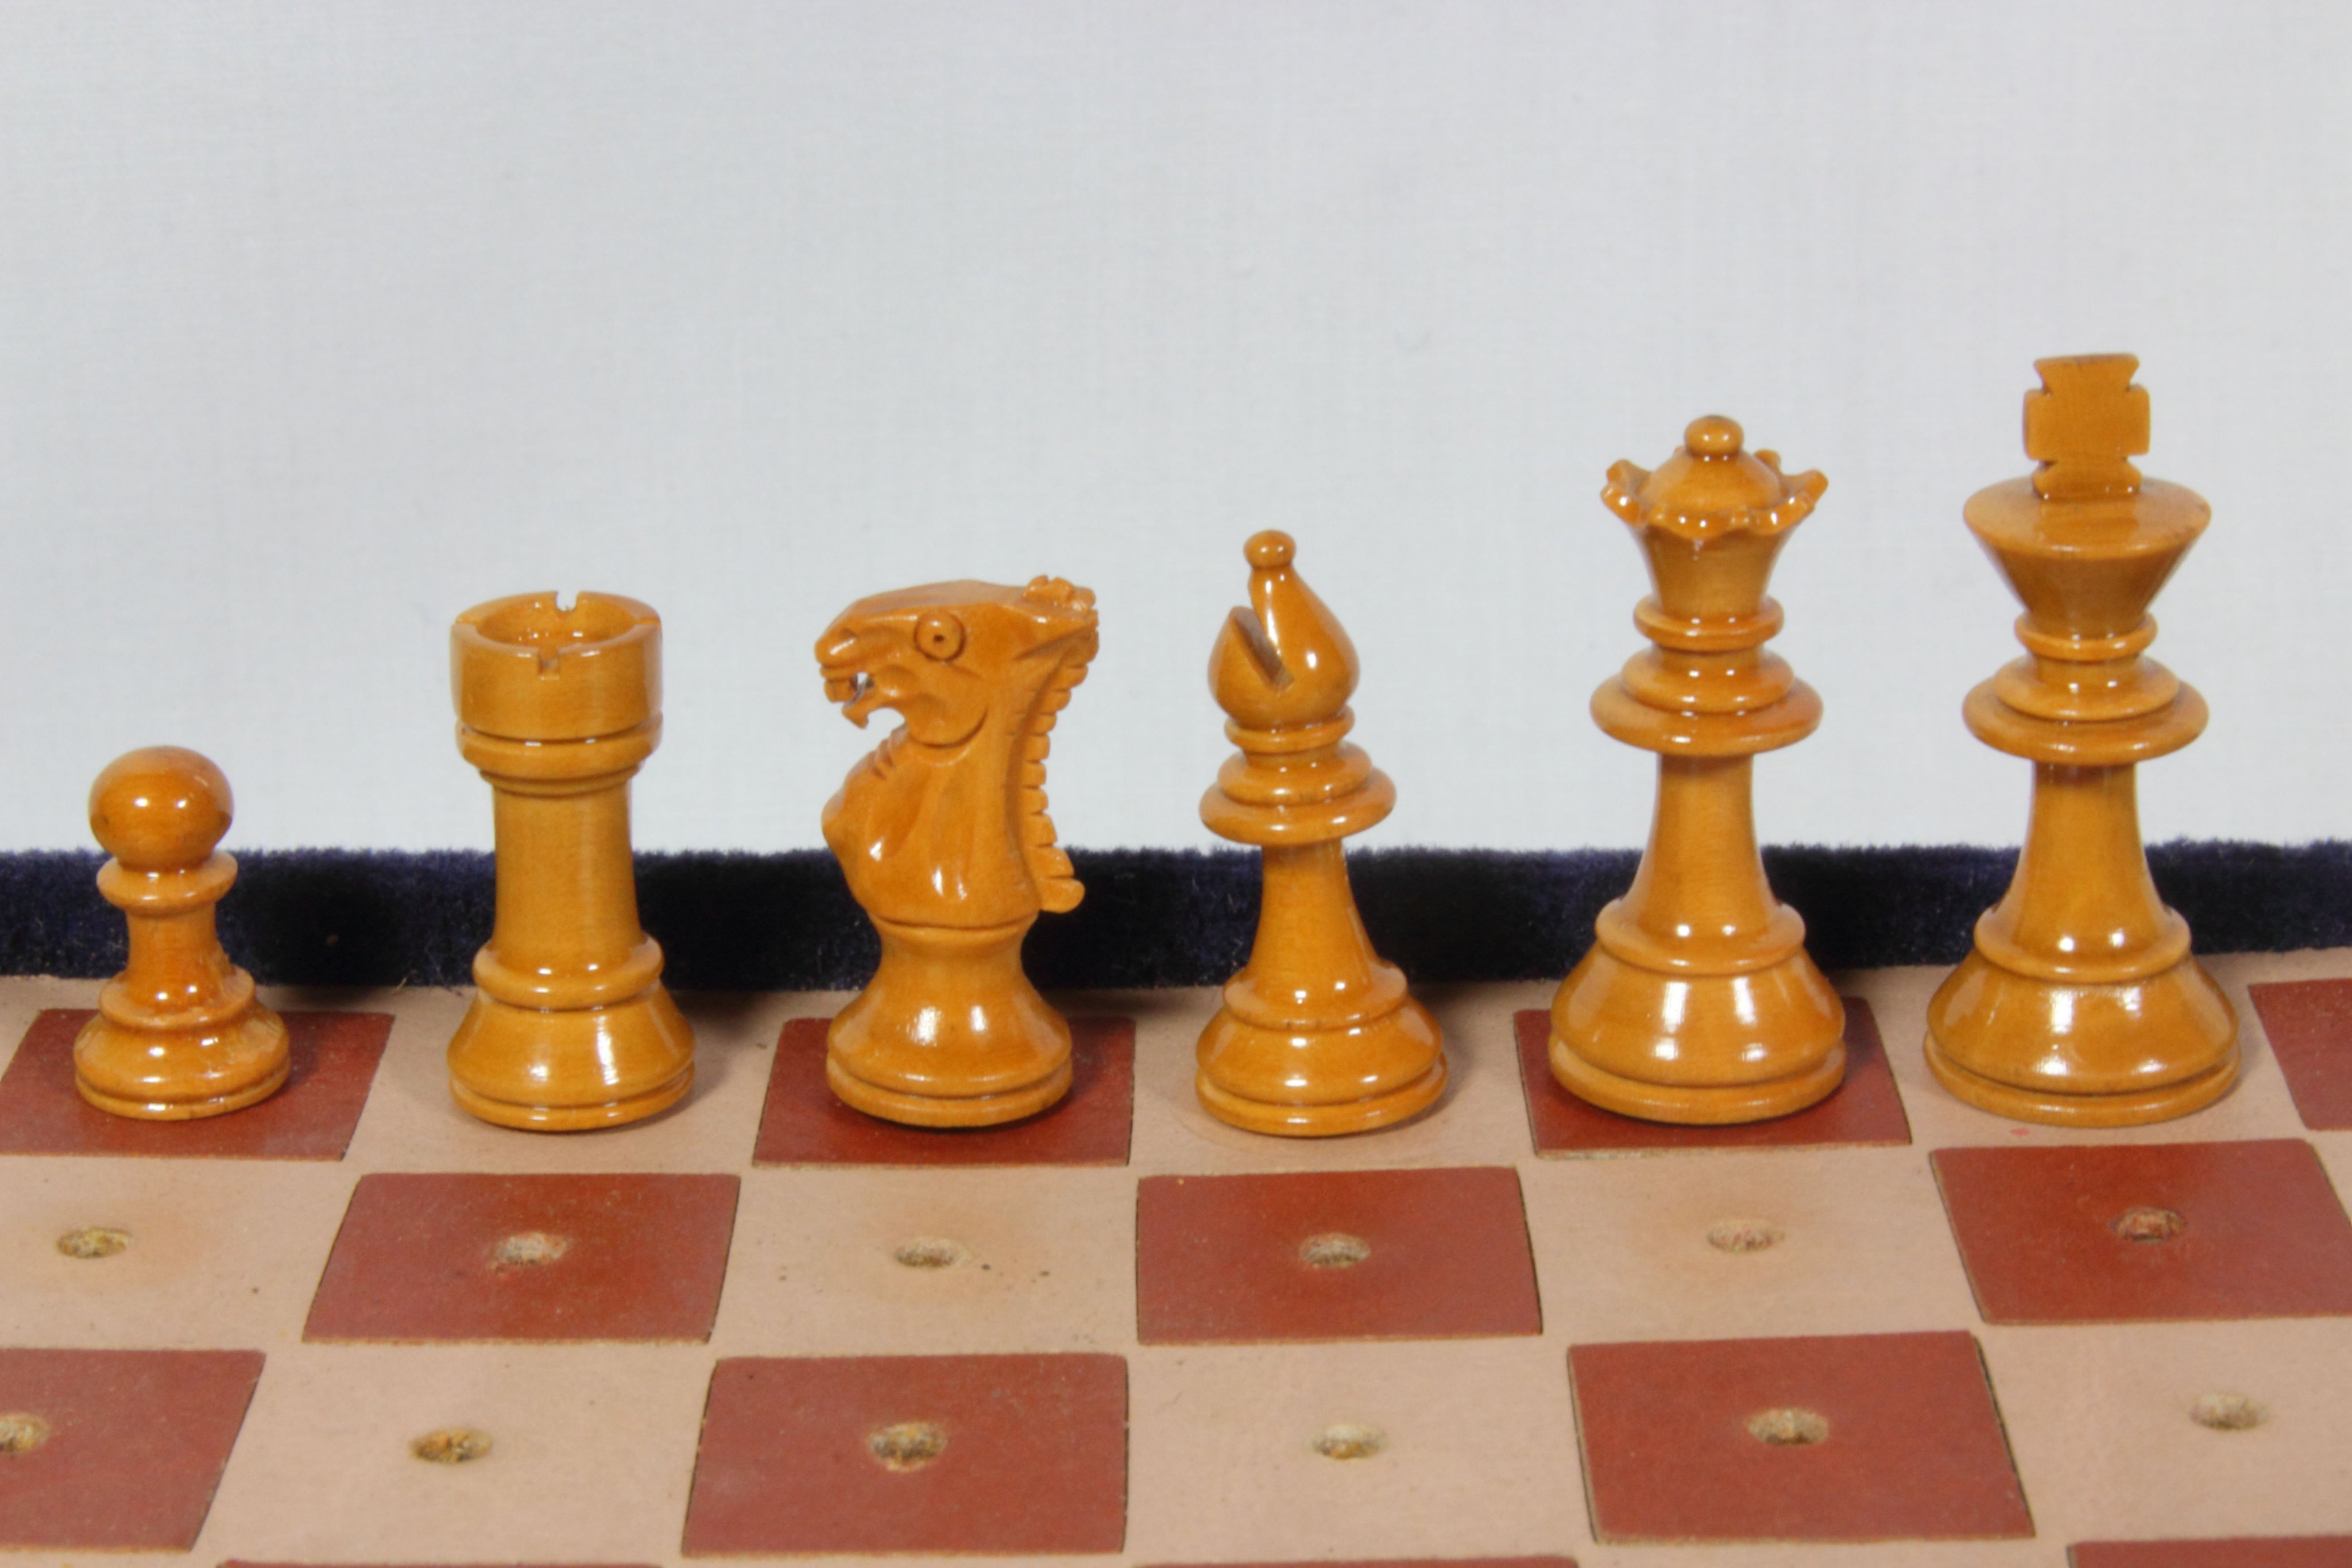 Hiroaki Matsui ナイト生産に向け試作中 自分のコレクションの中でも面白いのが極小のポータブルチェス 普通のナイトと比較すると嘘のように小さいのにとても精密に出来ている しかも木製 一体どうやって作っているんだろう チェス Chess